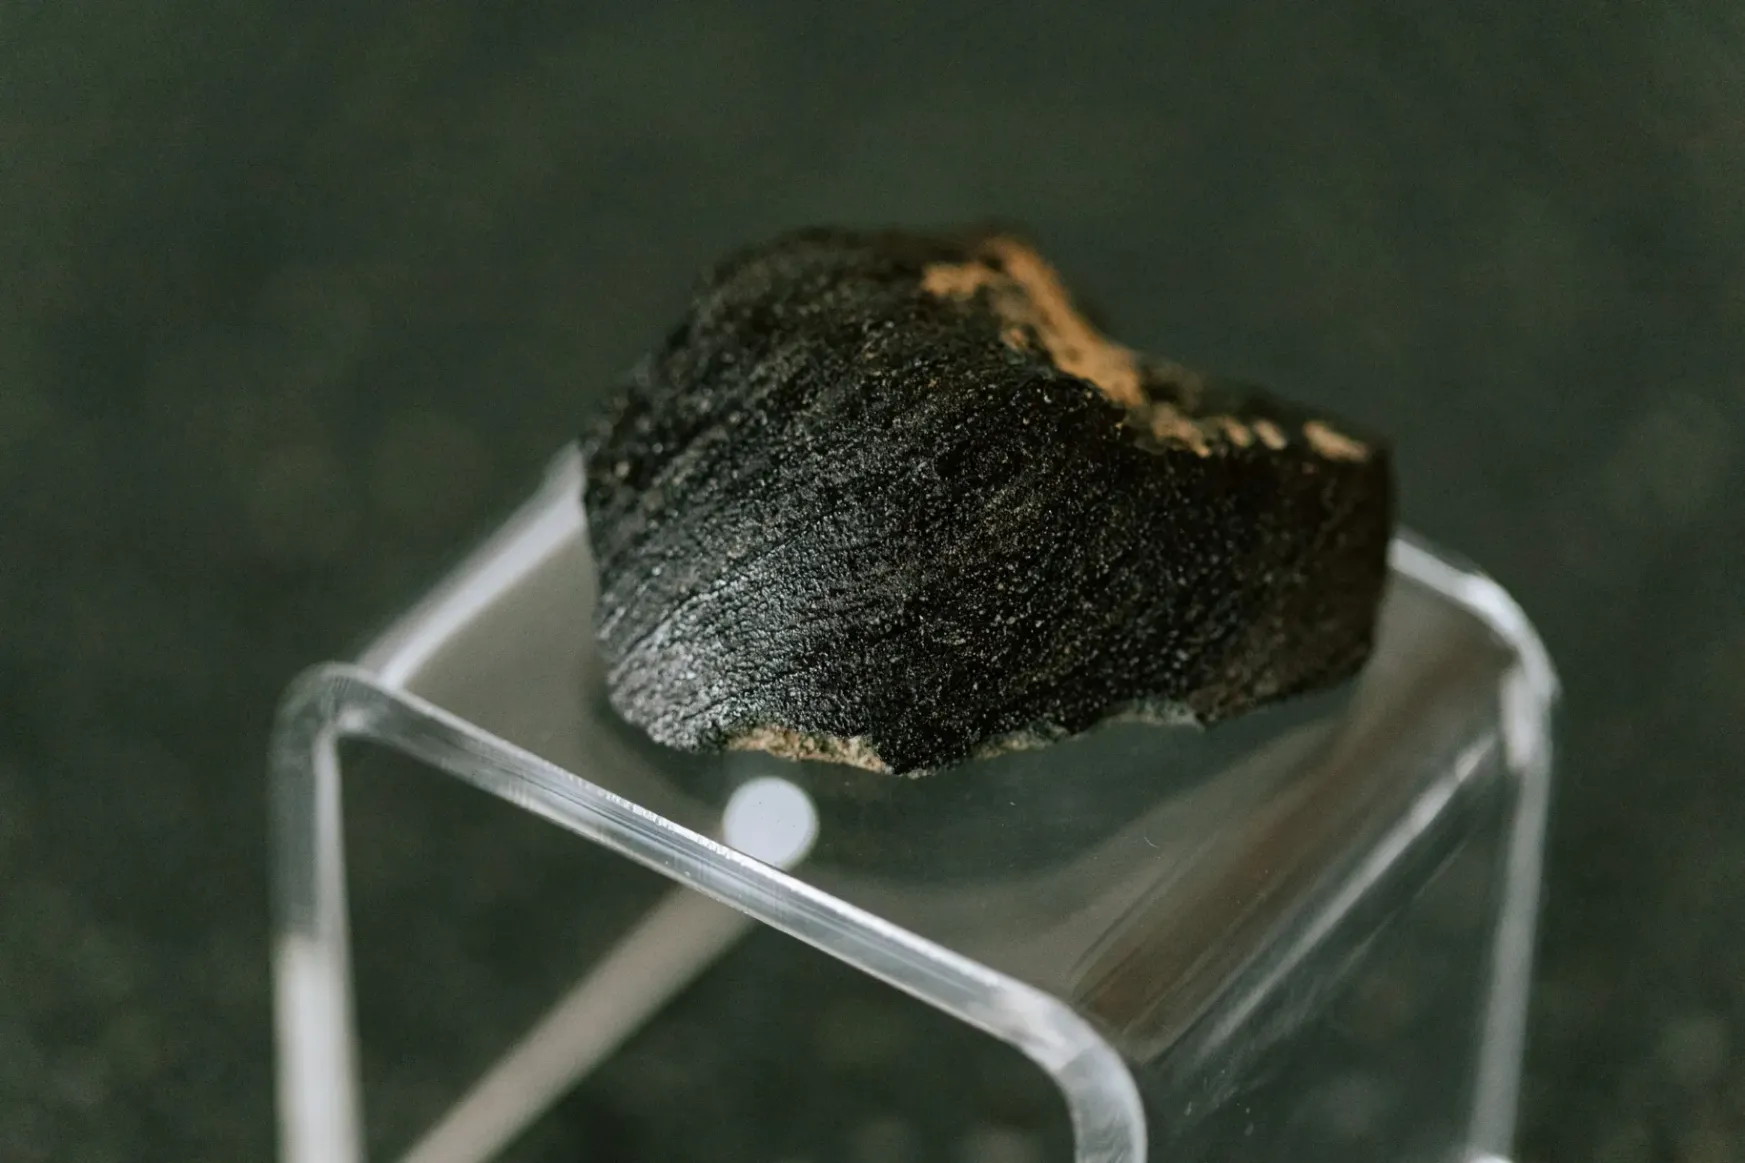 Disznóhányás segíthet megoldani a marsi meteorit évszázados rejtélyét